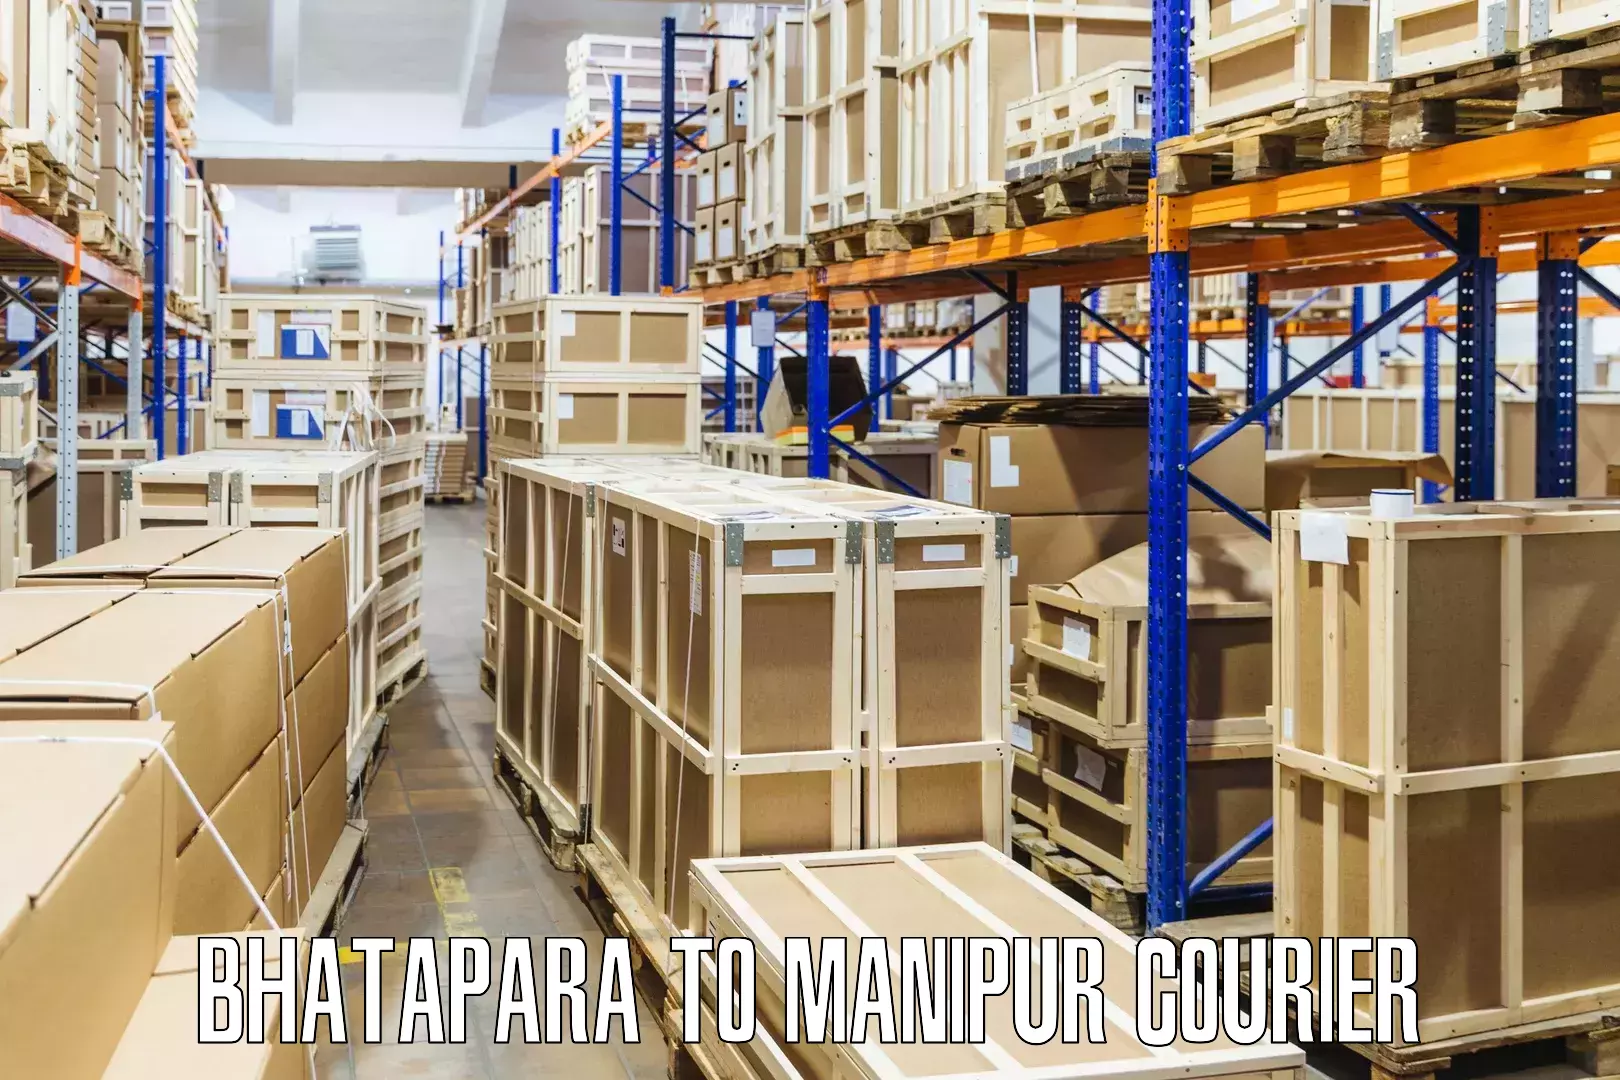 Logistics service provider Bhatapara to Jiribam